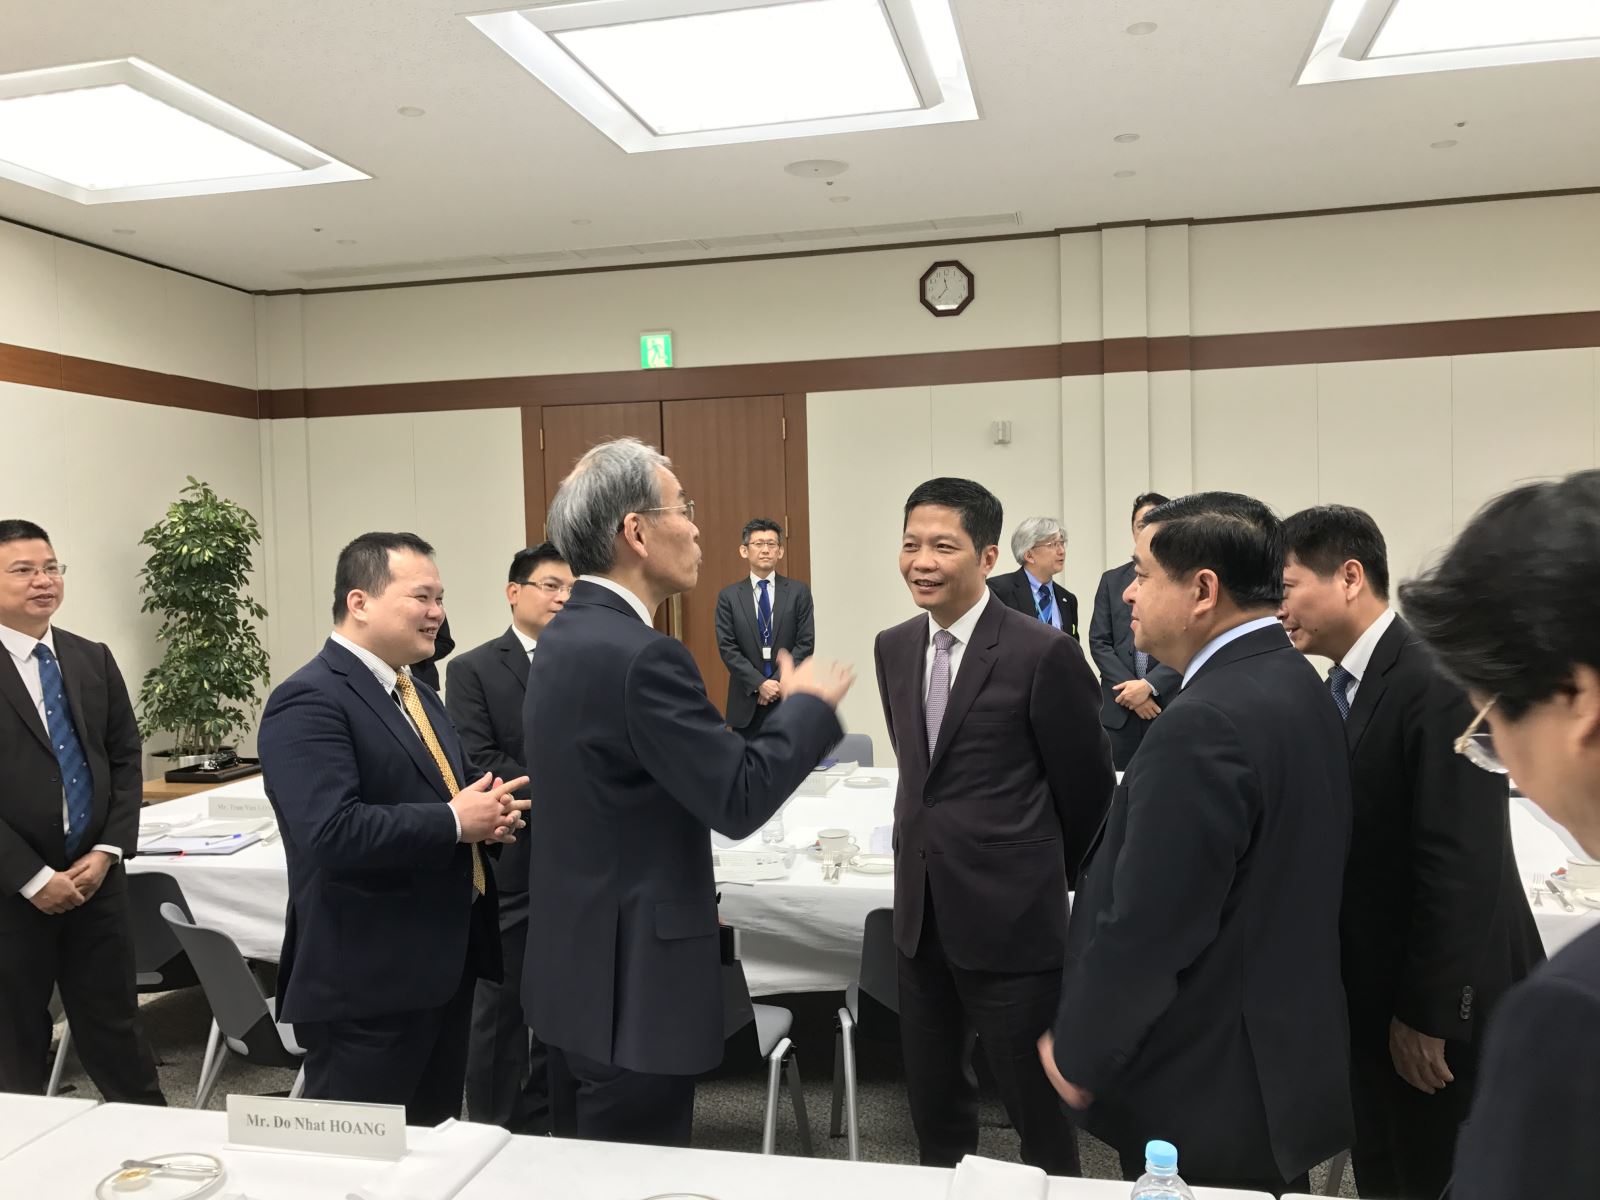 Bộ trưởng Trần Tuấn Anh tham gia hoạt động xúc tiến đầu tư tại Nhật Bản để phát triển ngành Công thương Việt Nam